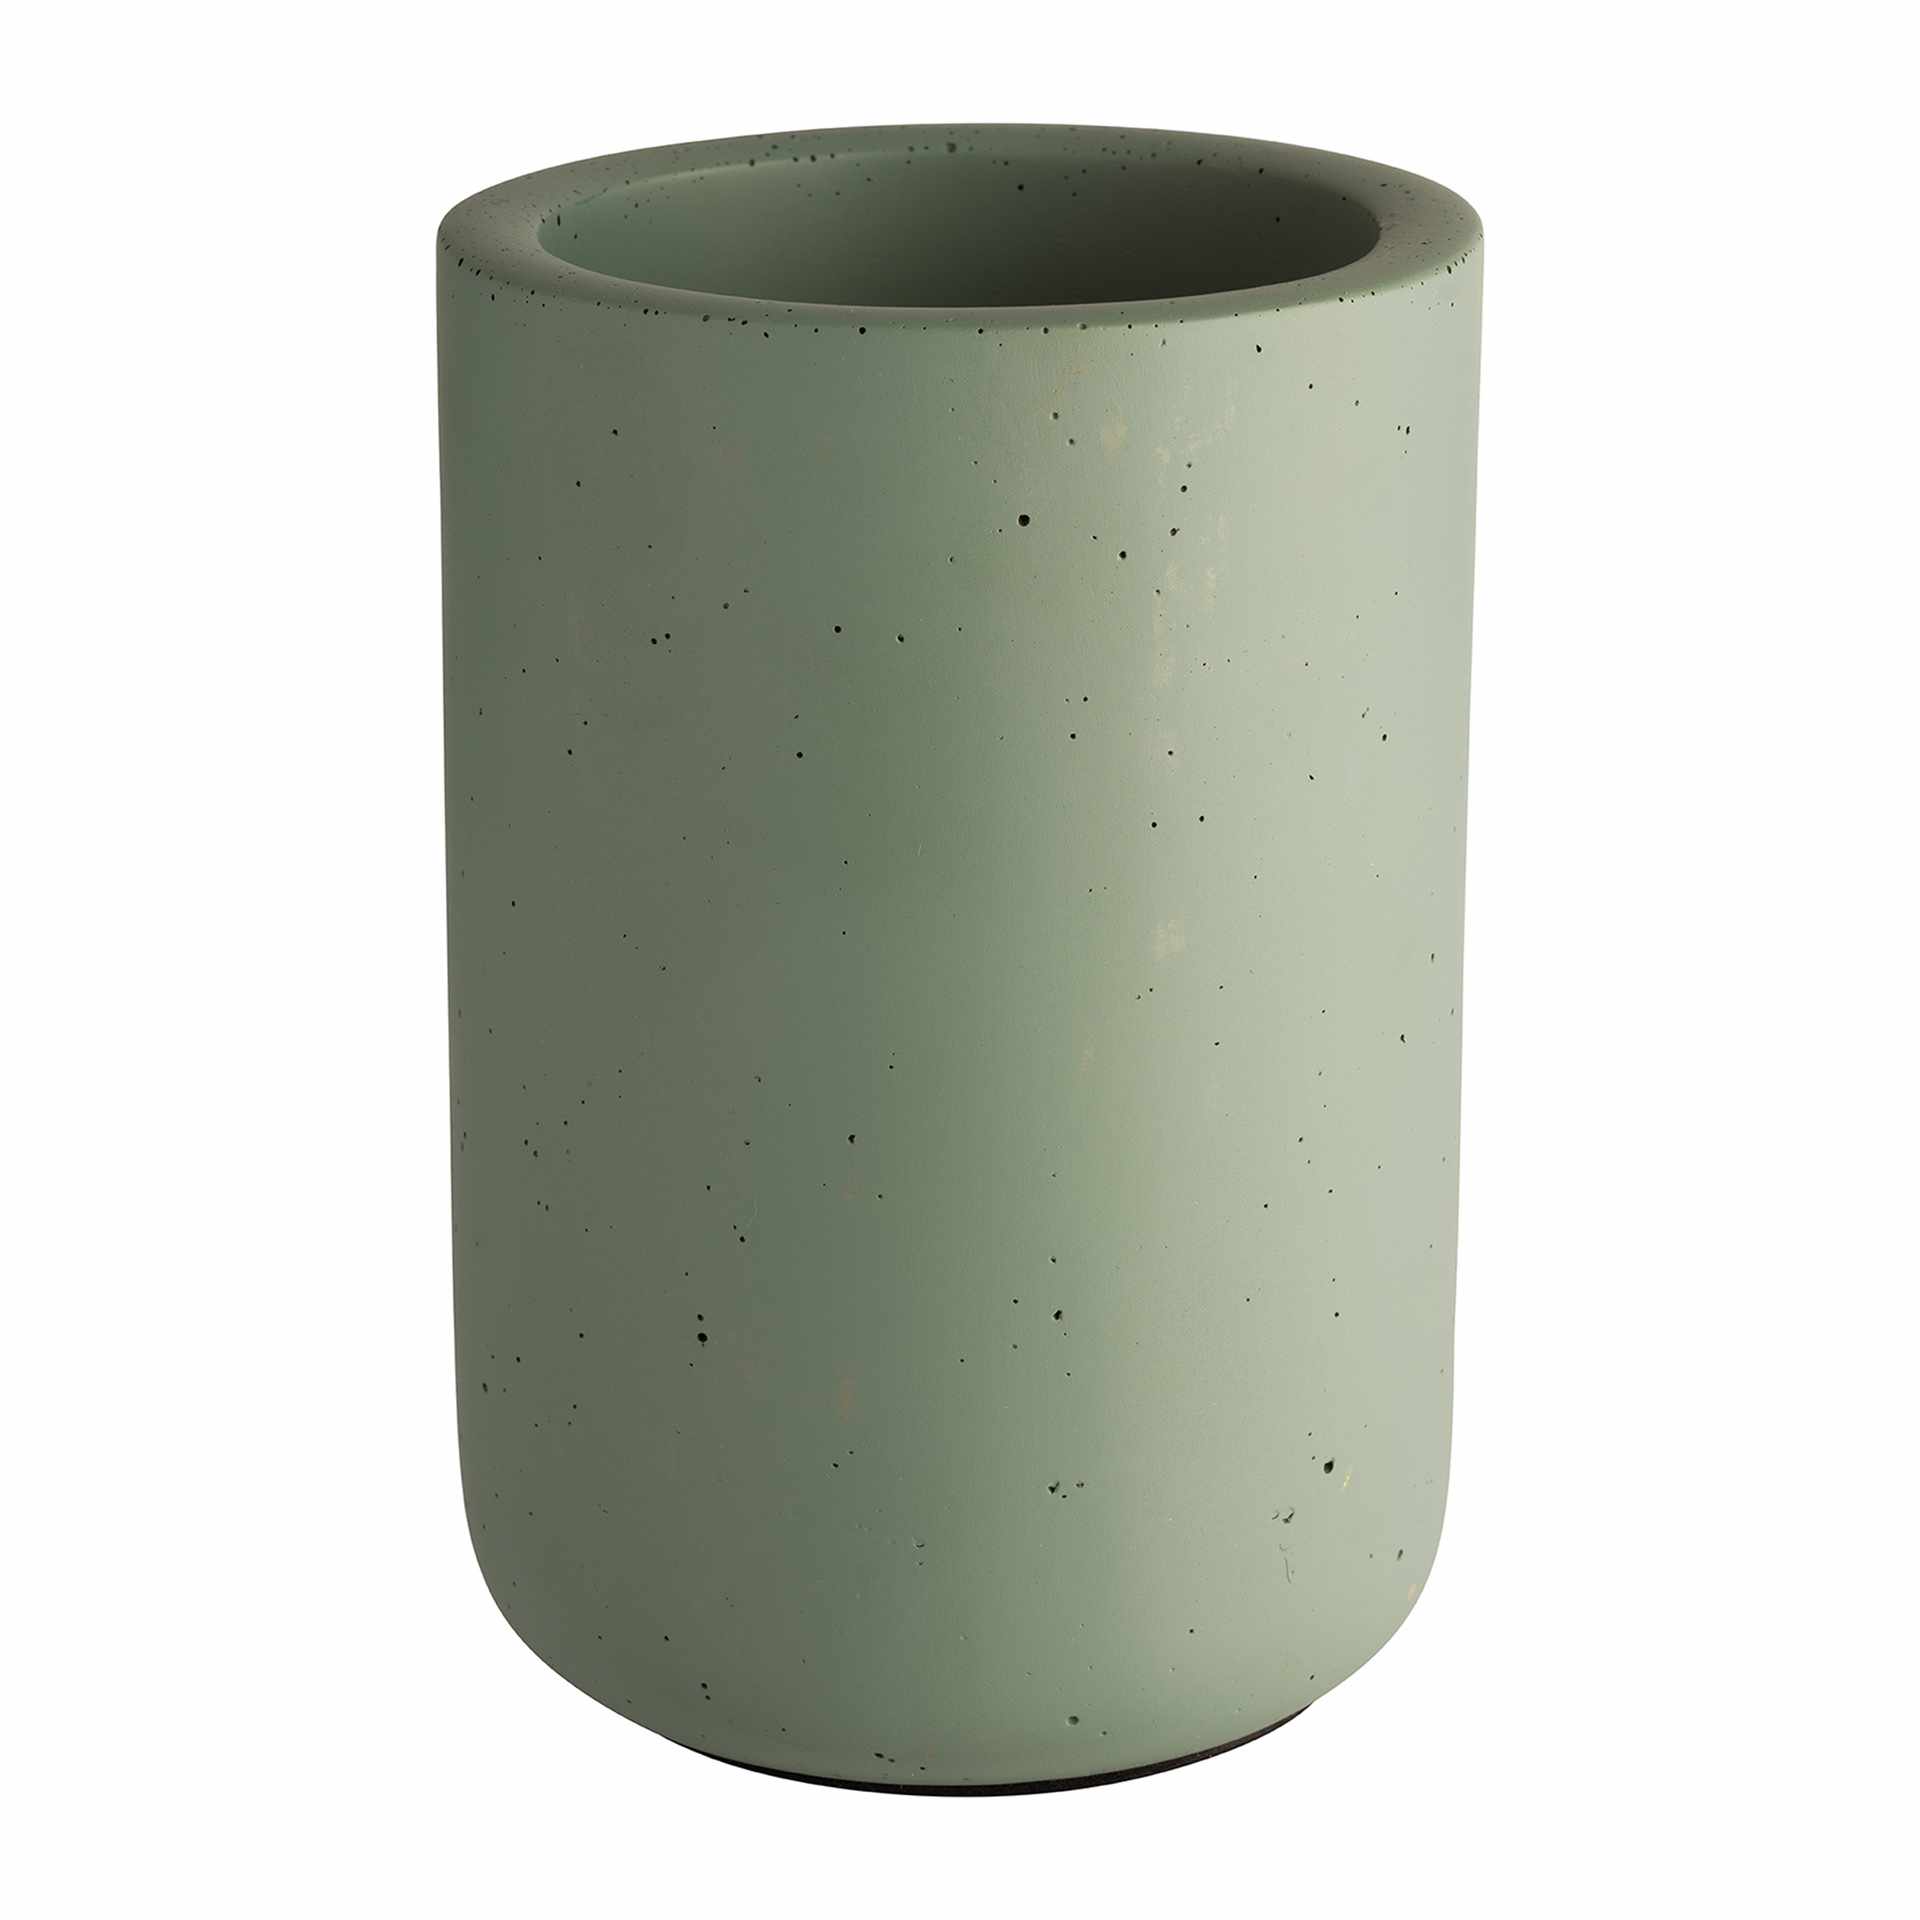 Flaschenkühler - Serie Element - grün - Höhe 19,0 cm - Ø (außen) 12 cm - Beton - 36105-B